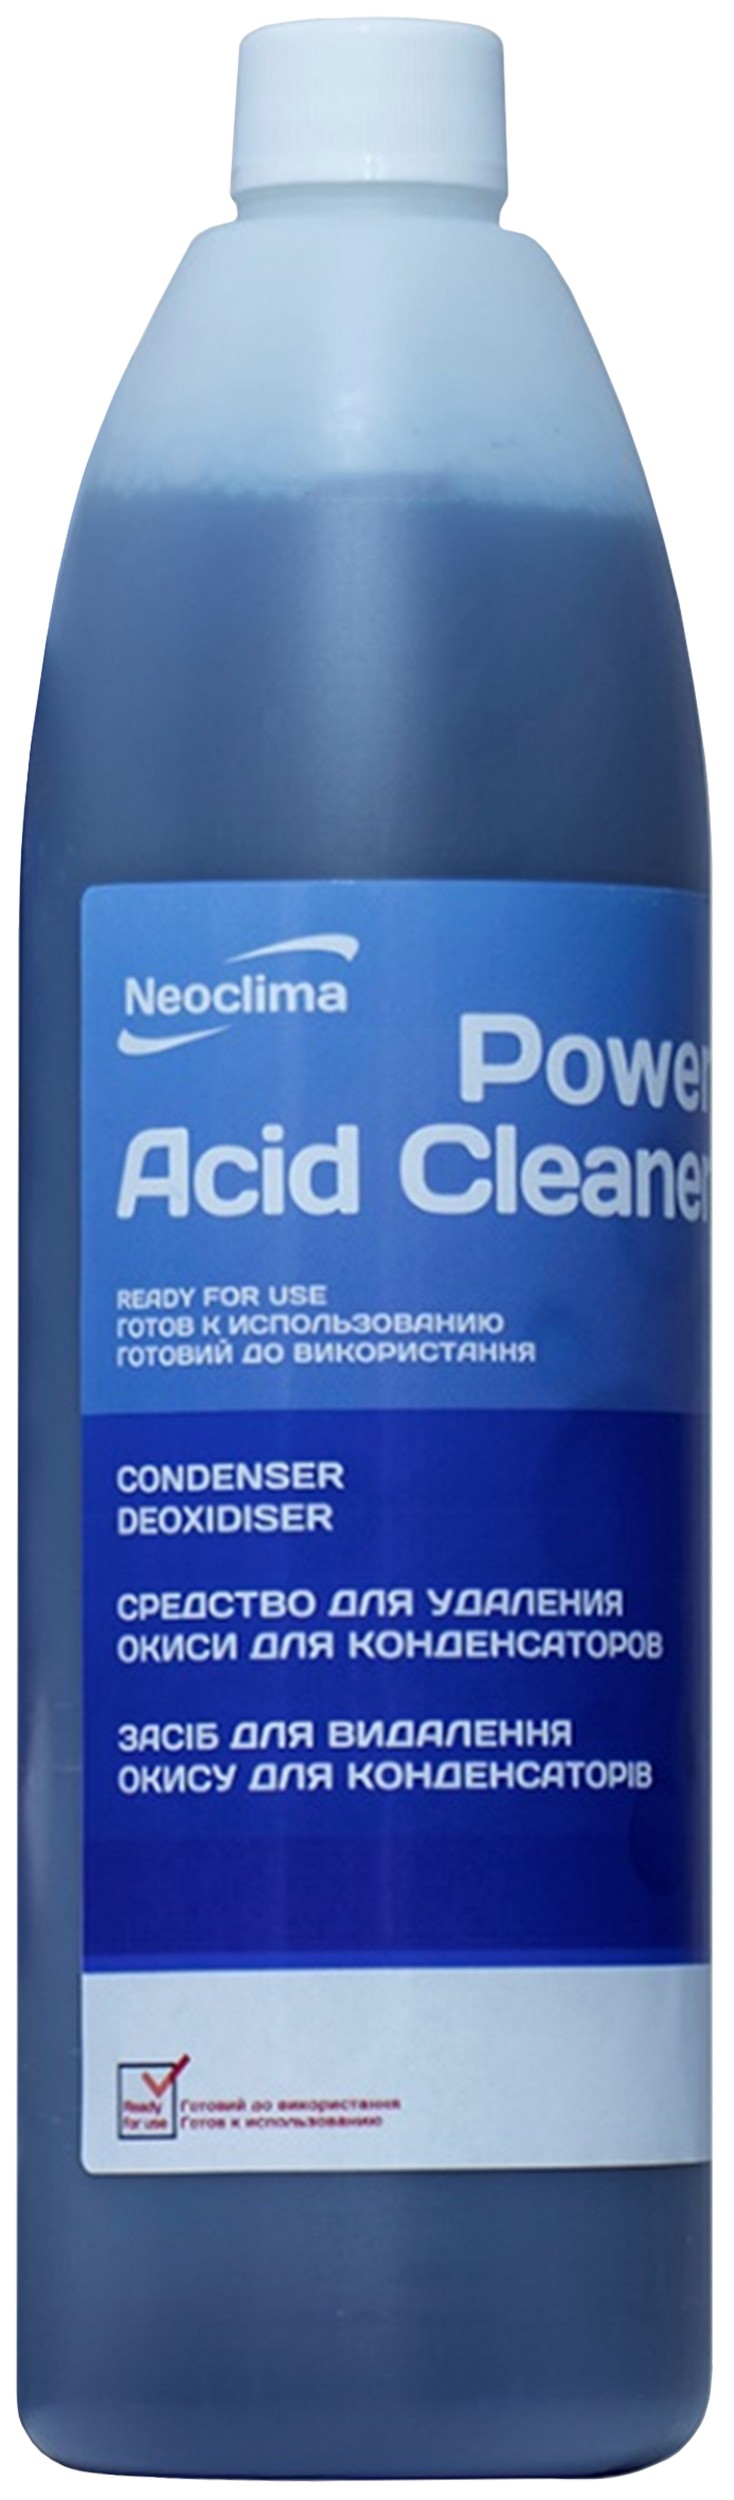 Купить очиститель внешнего блока Neoclima Power Acid Cleaner 1 л, спрей в Львове